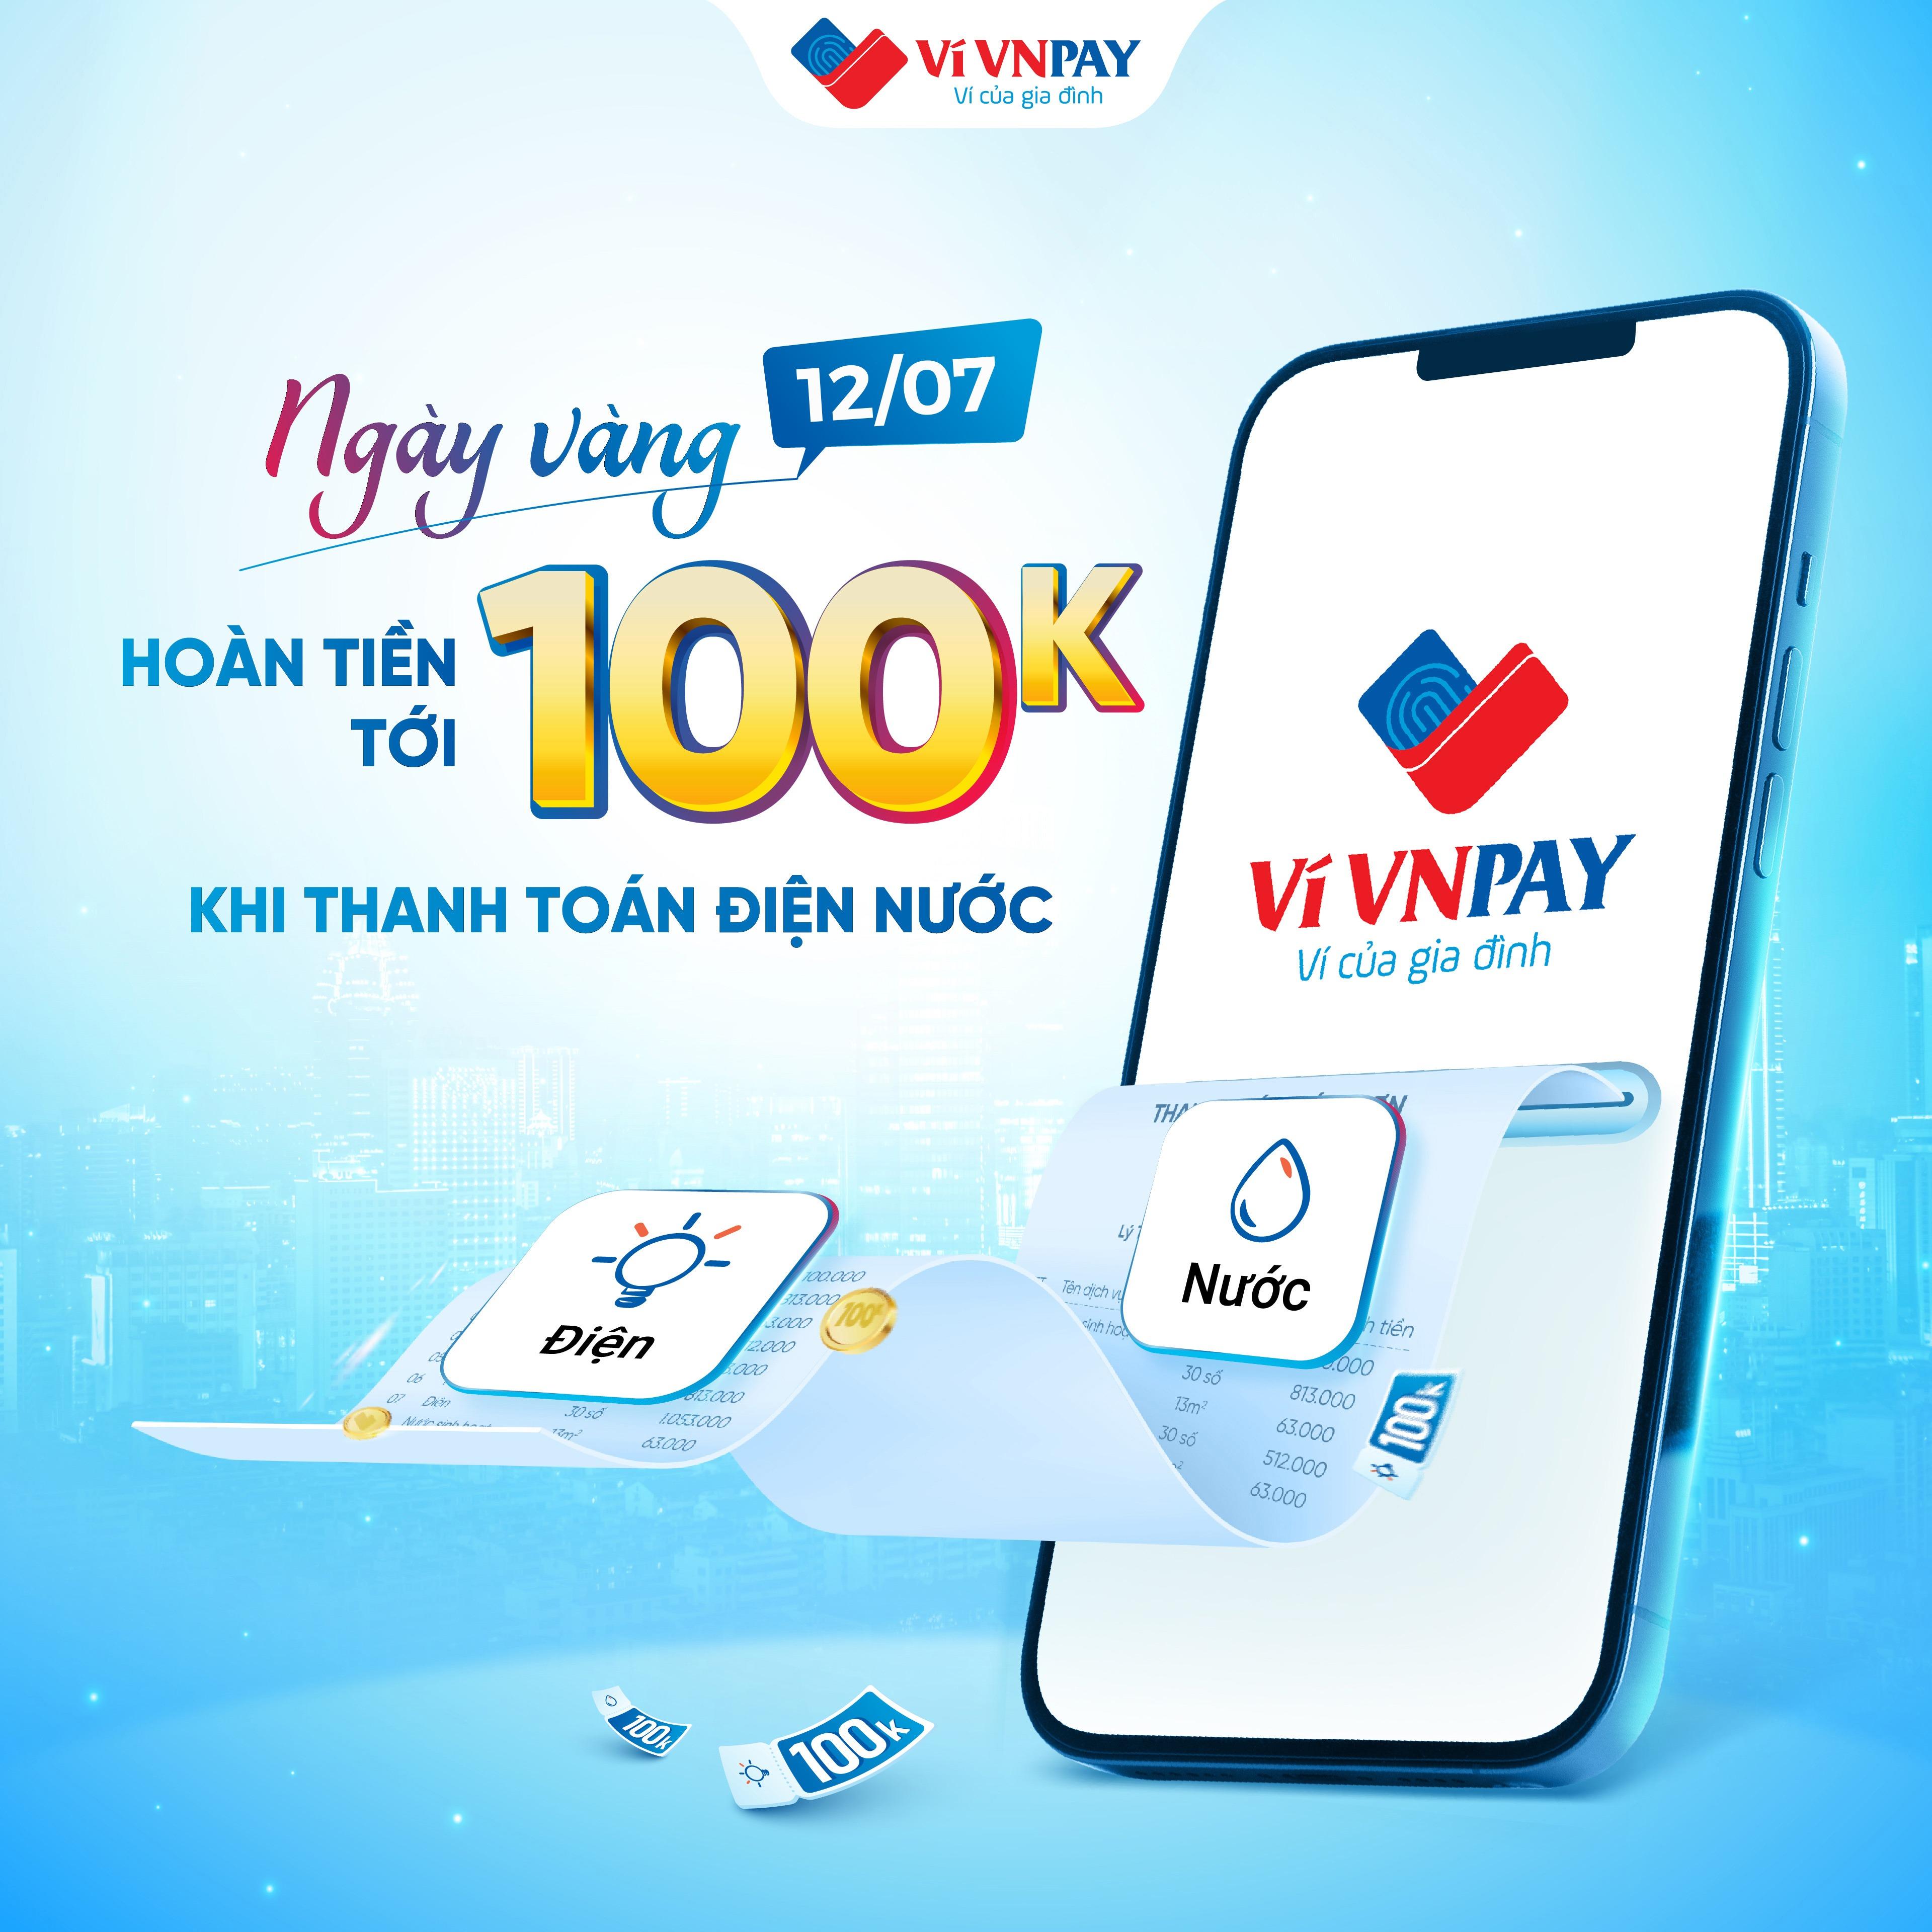 Mở ví VNPAY chạm thanh toán điện nước, hoàn tiền đến 100.000 đồng